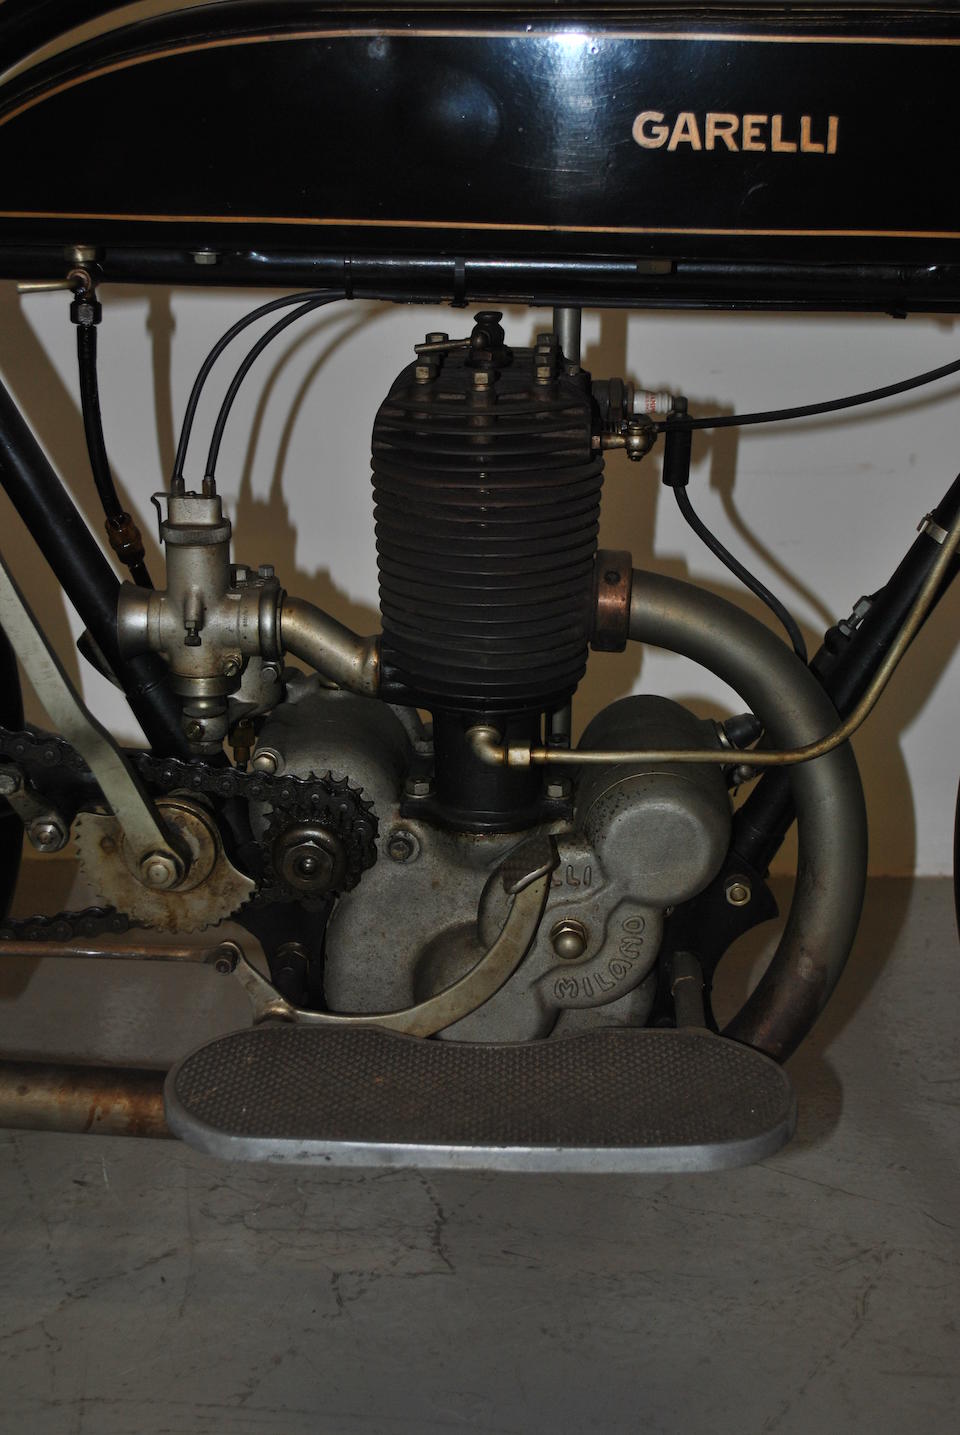 c.1924 Garelli 349cc Roadster Frame no. MG2862 Engine no. 5296